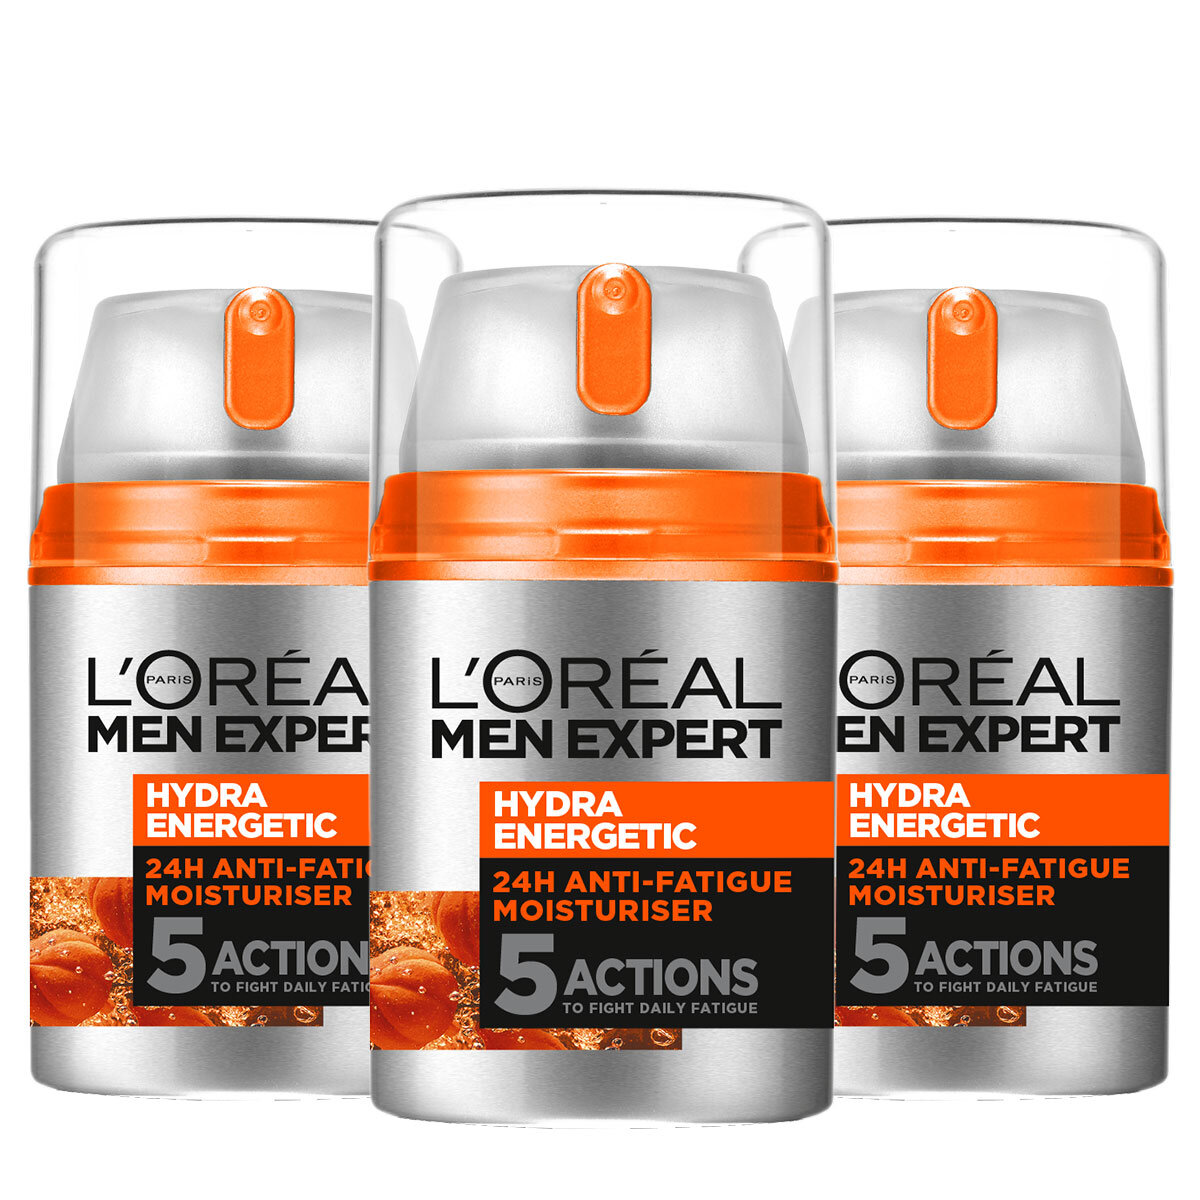 L'Oreal Men expert tub of cream x2